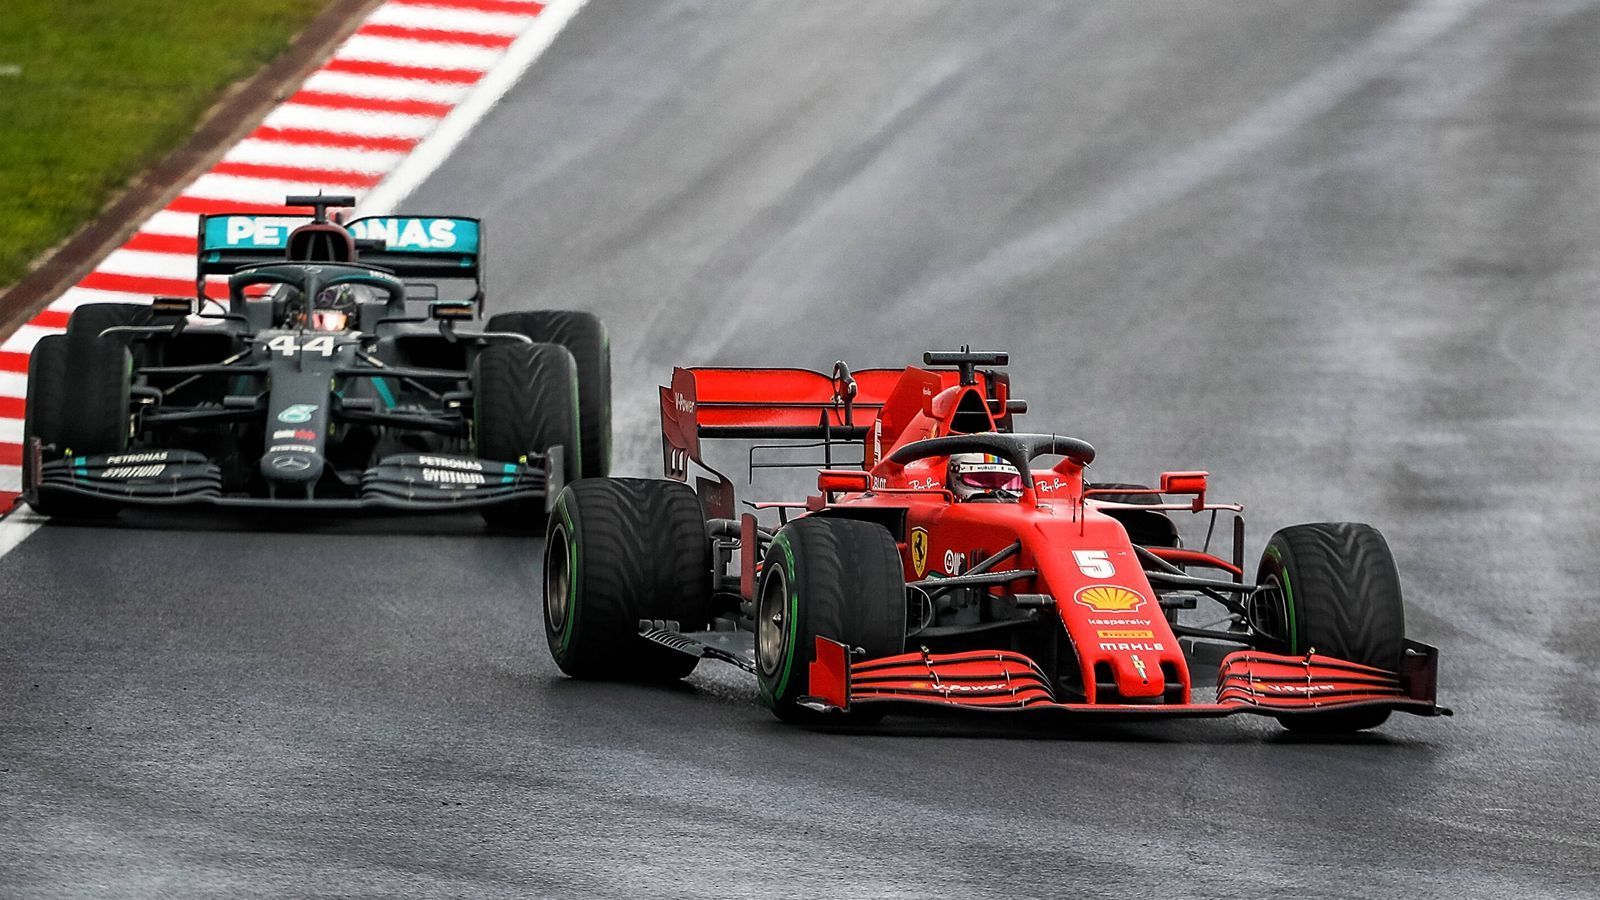 
                <strong>Formel 1</strong><br>
                Sebastian Vettel bezeichnete die 1,6-Liter-V6-Turbomotoren der Formel 1 mal vor einigen Jahren als "Staubsauger". Ganz so schlimm ist es nicht. 2017 wurden die Boliden in Australien offiziell gemessen: Der damalige Force India (heute Racing Point) war mit 117,9 Dezibel das lauteste Auto. Und damit lauter als ein Staubsauger.
              